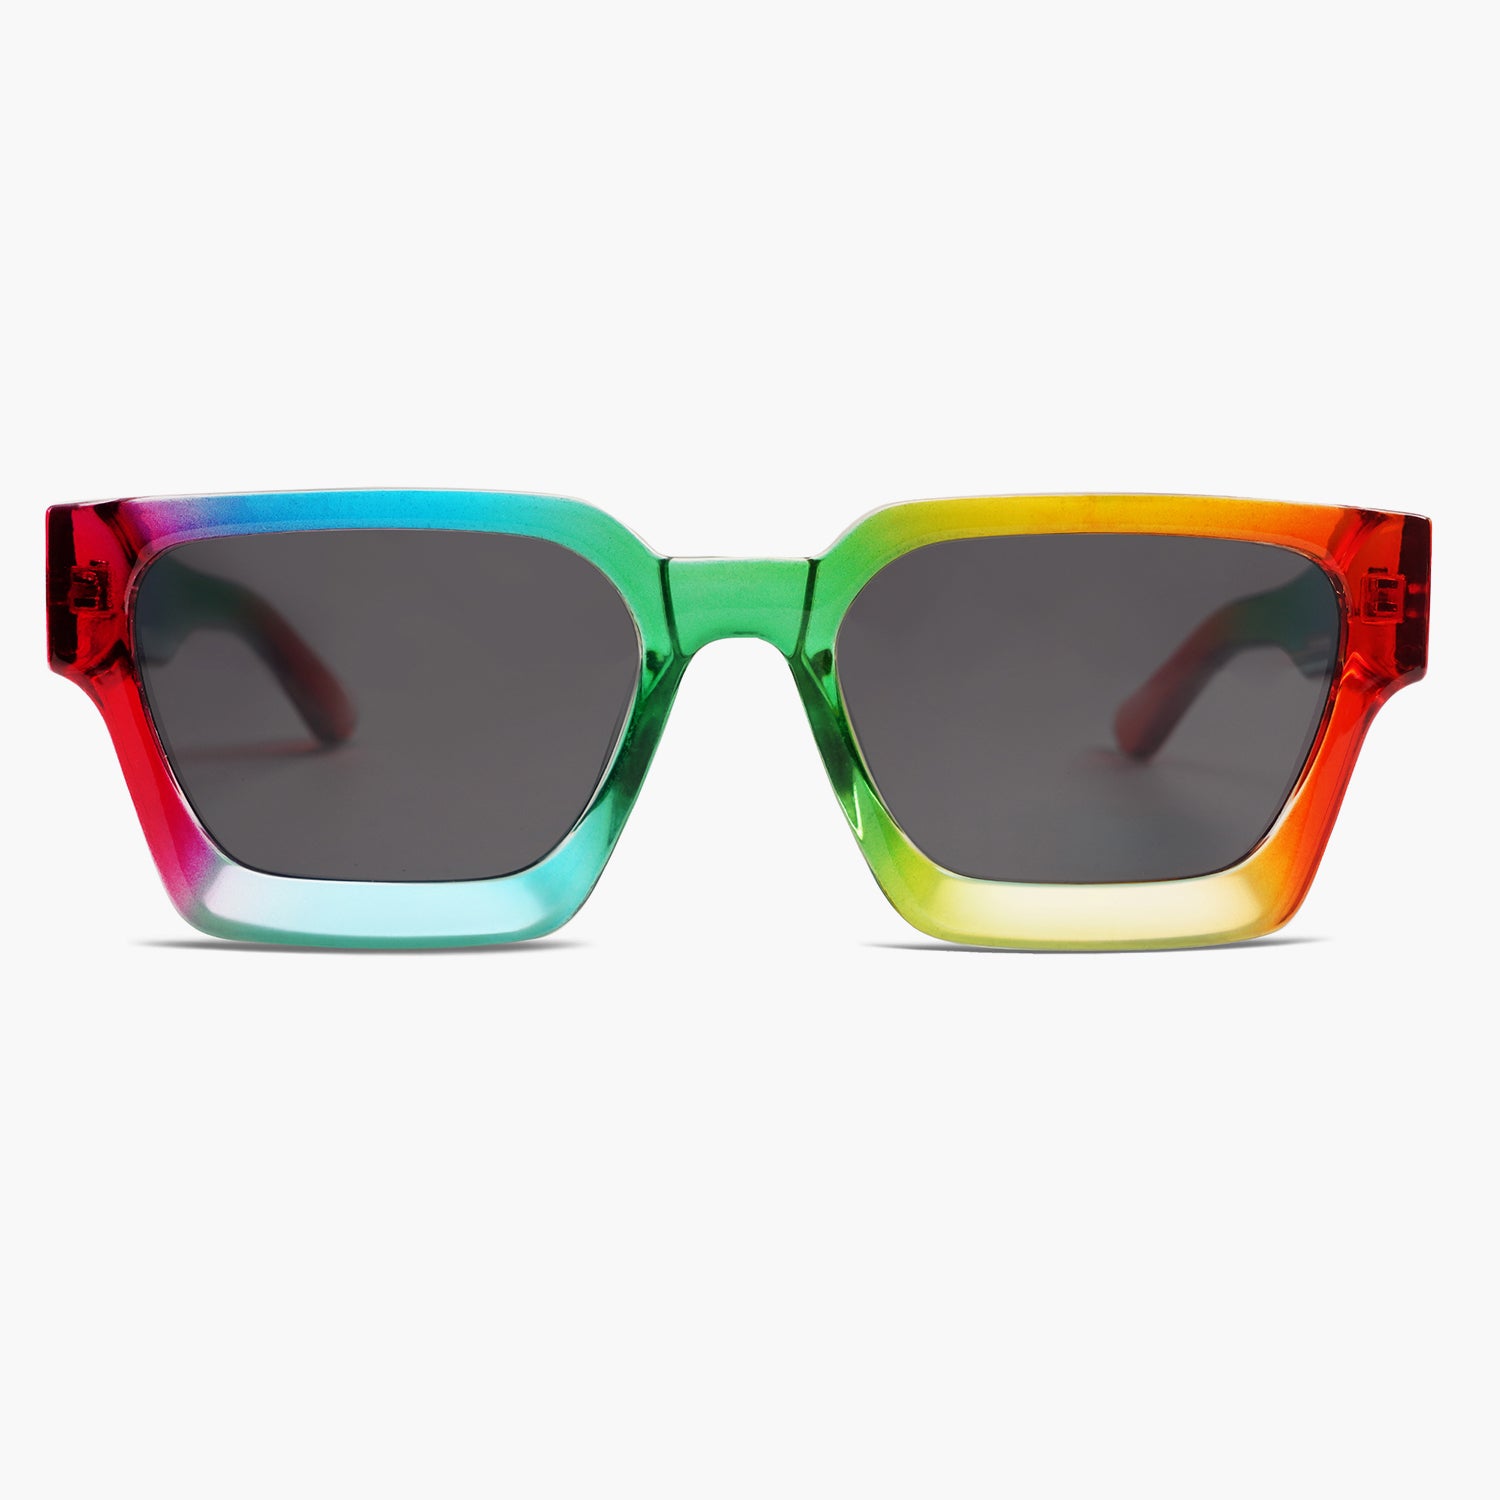 LV Millionaires Sunglasses  Sunglasses, Indie sunglasses, Glasses fashion